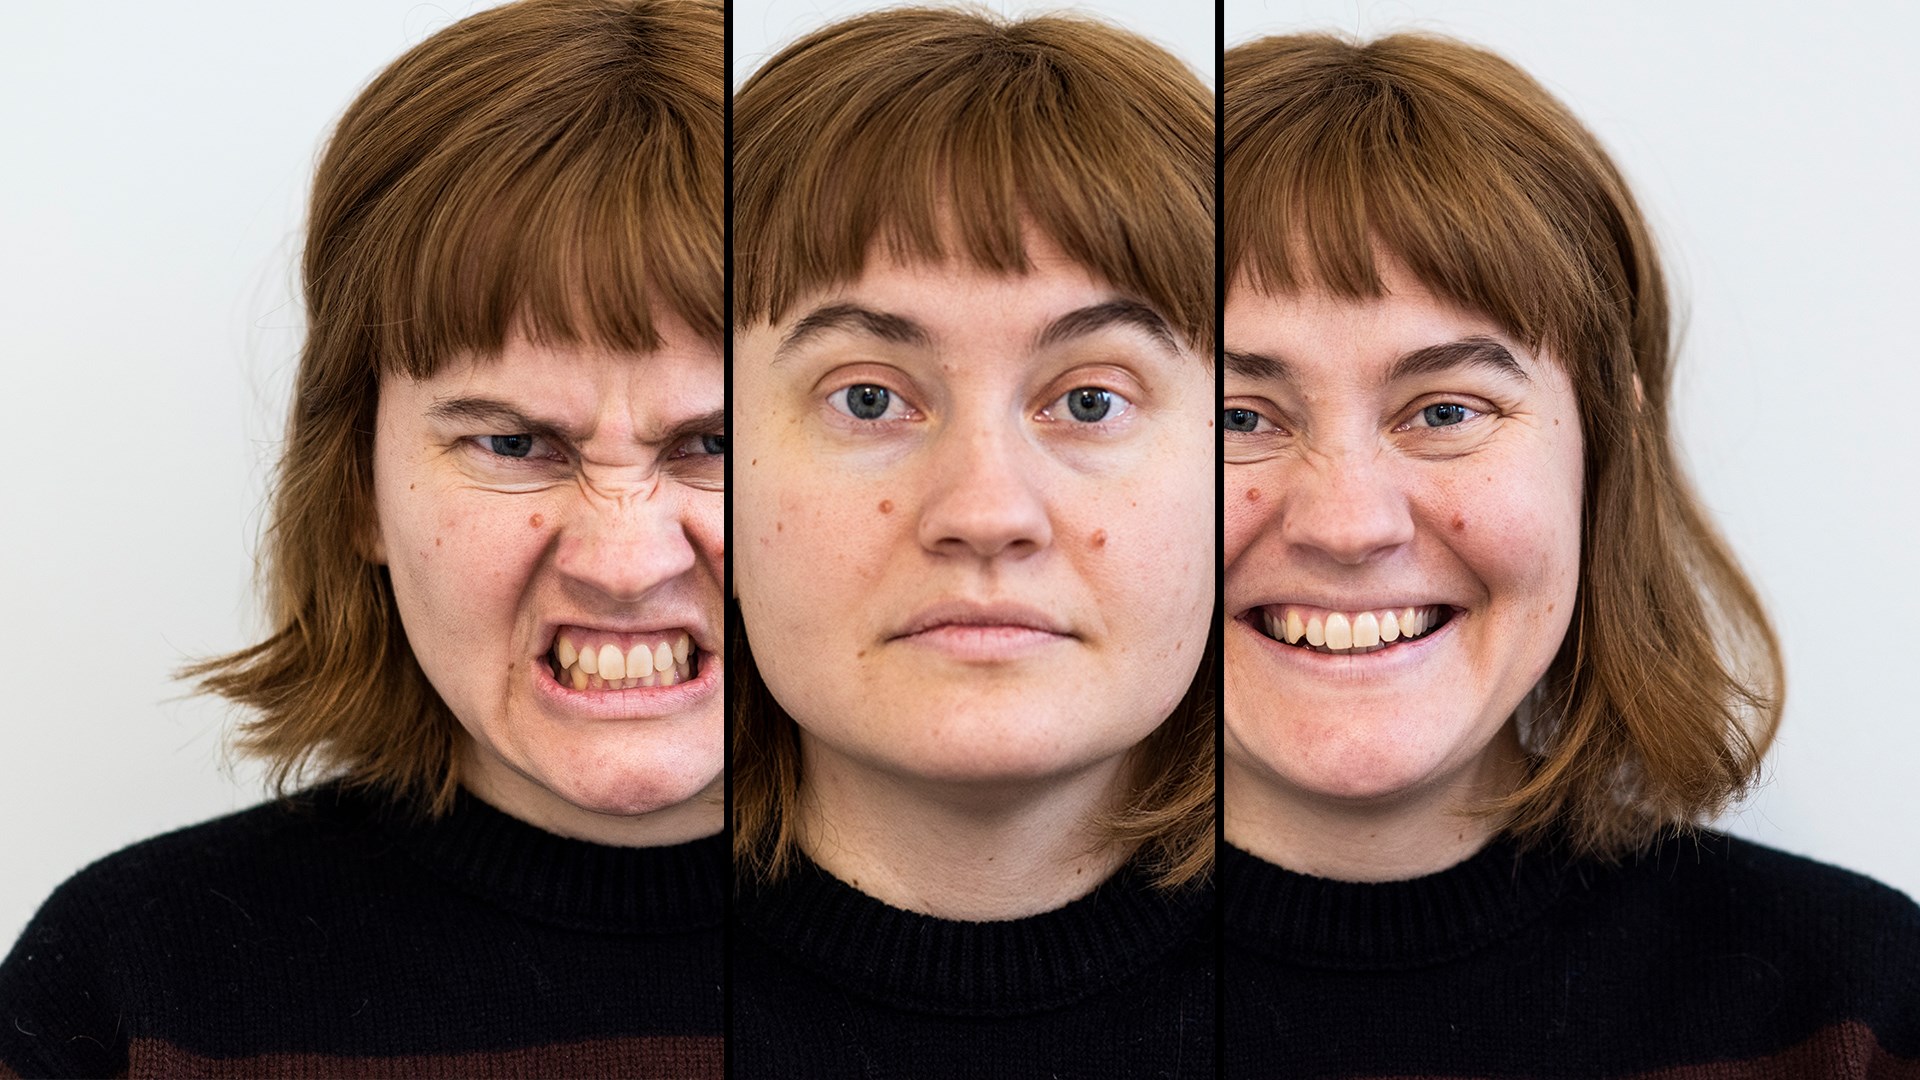 En bild som visar tre likadana ansiken. Den första är arg, den andra är neutral, den tredje är glad.